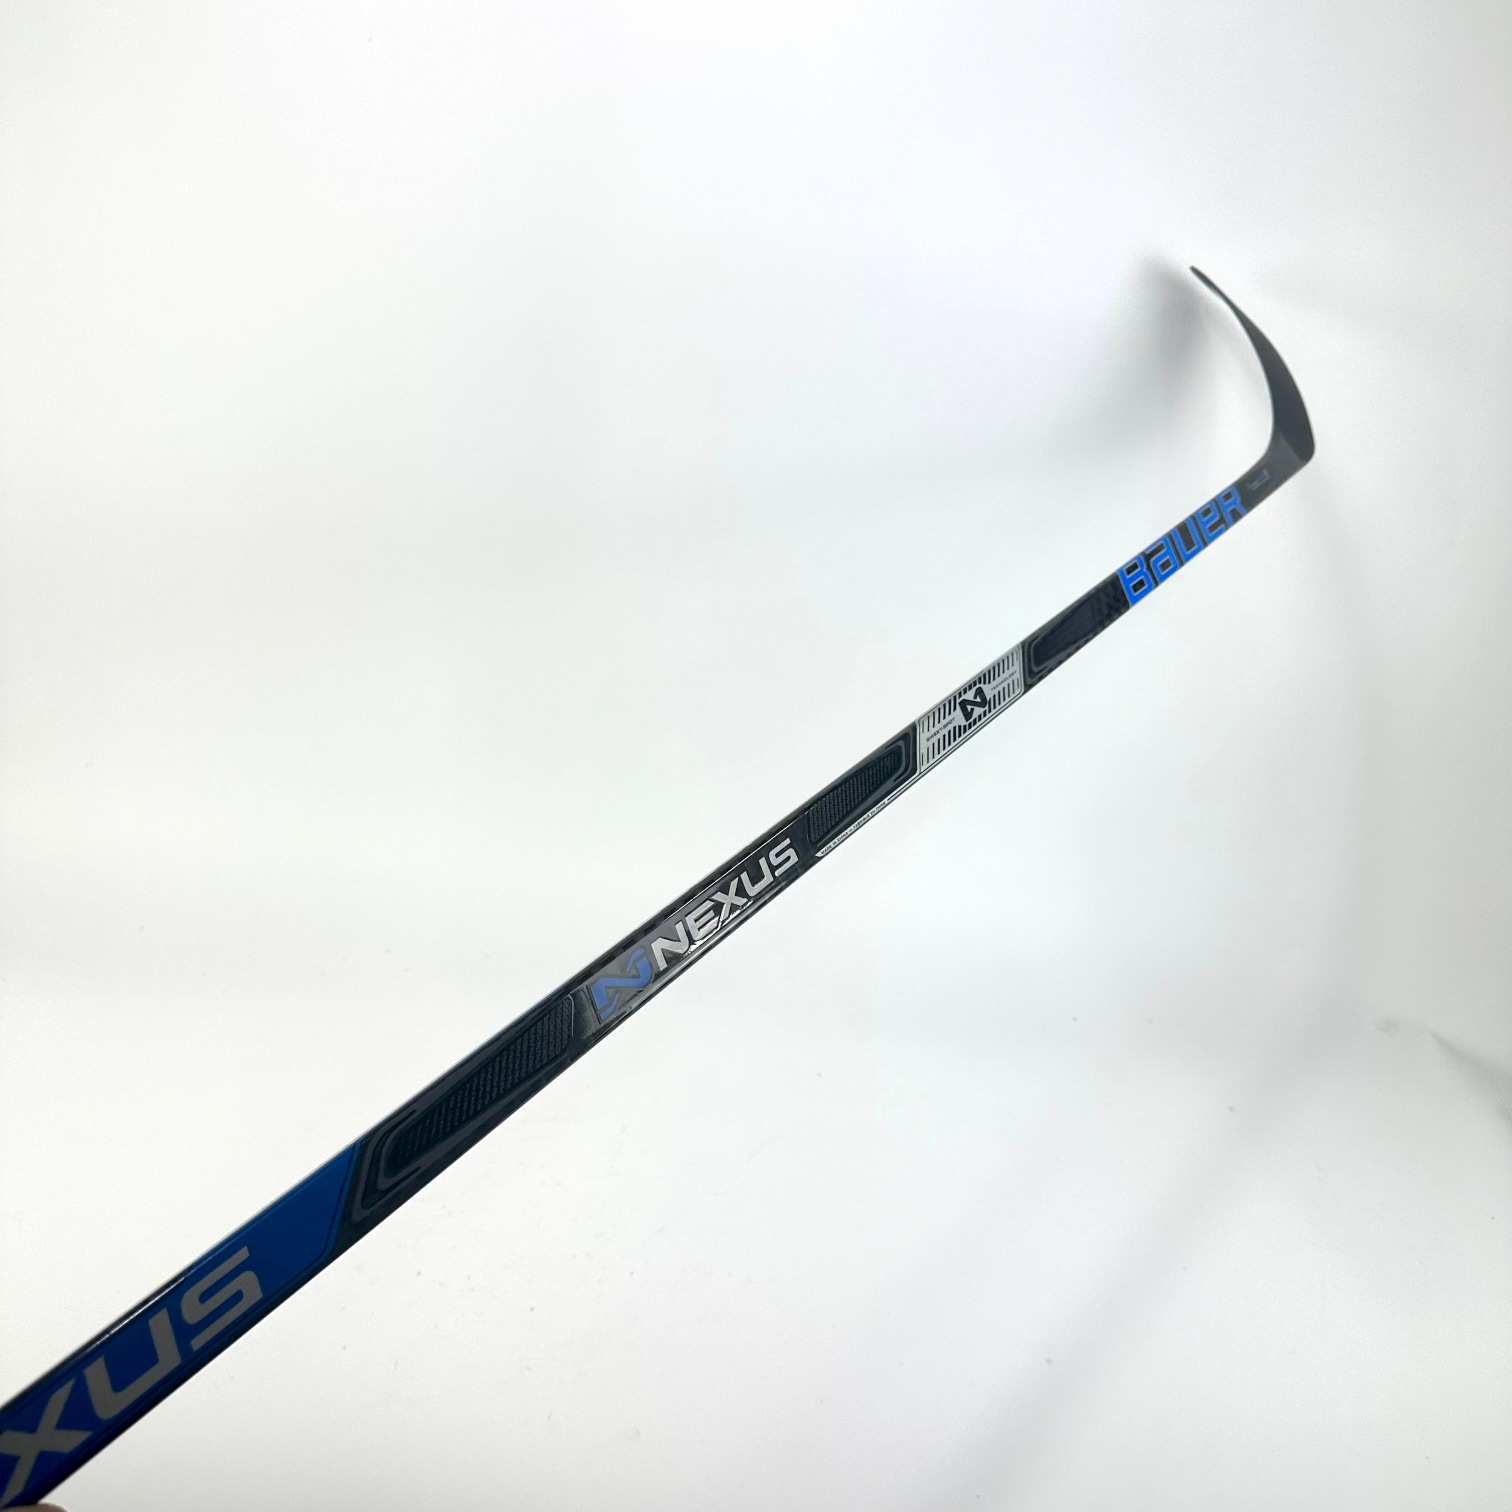 Brand New Bauer Right Handed Bauer Team Nexus Hockey Stick P92 Curve 77 Flex - #G38